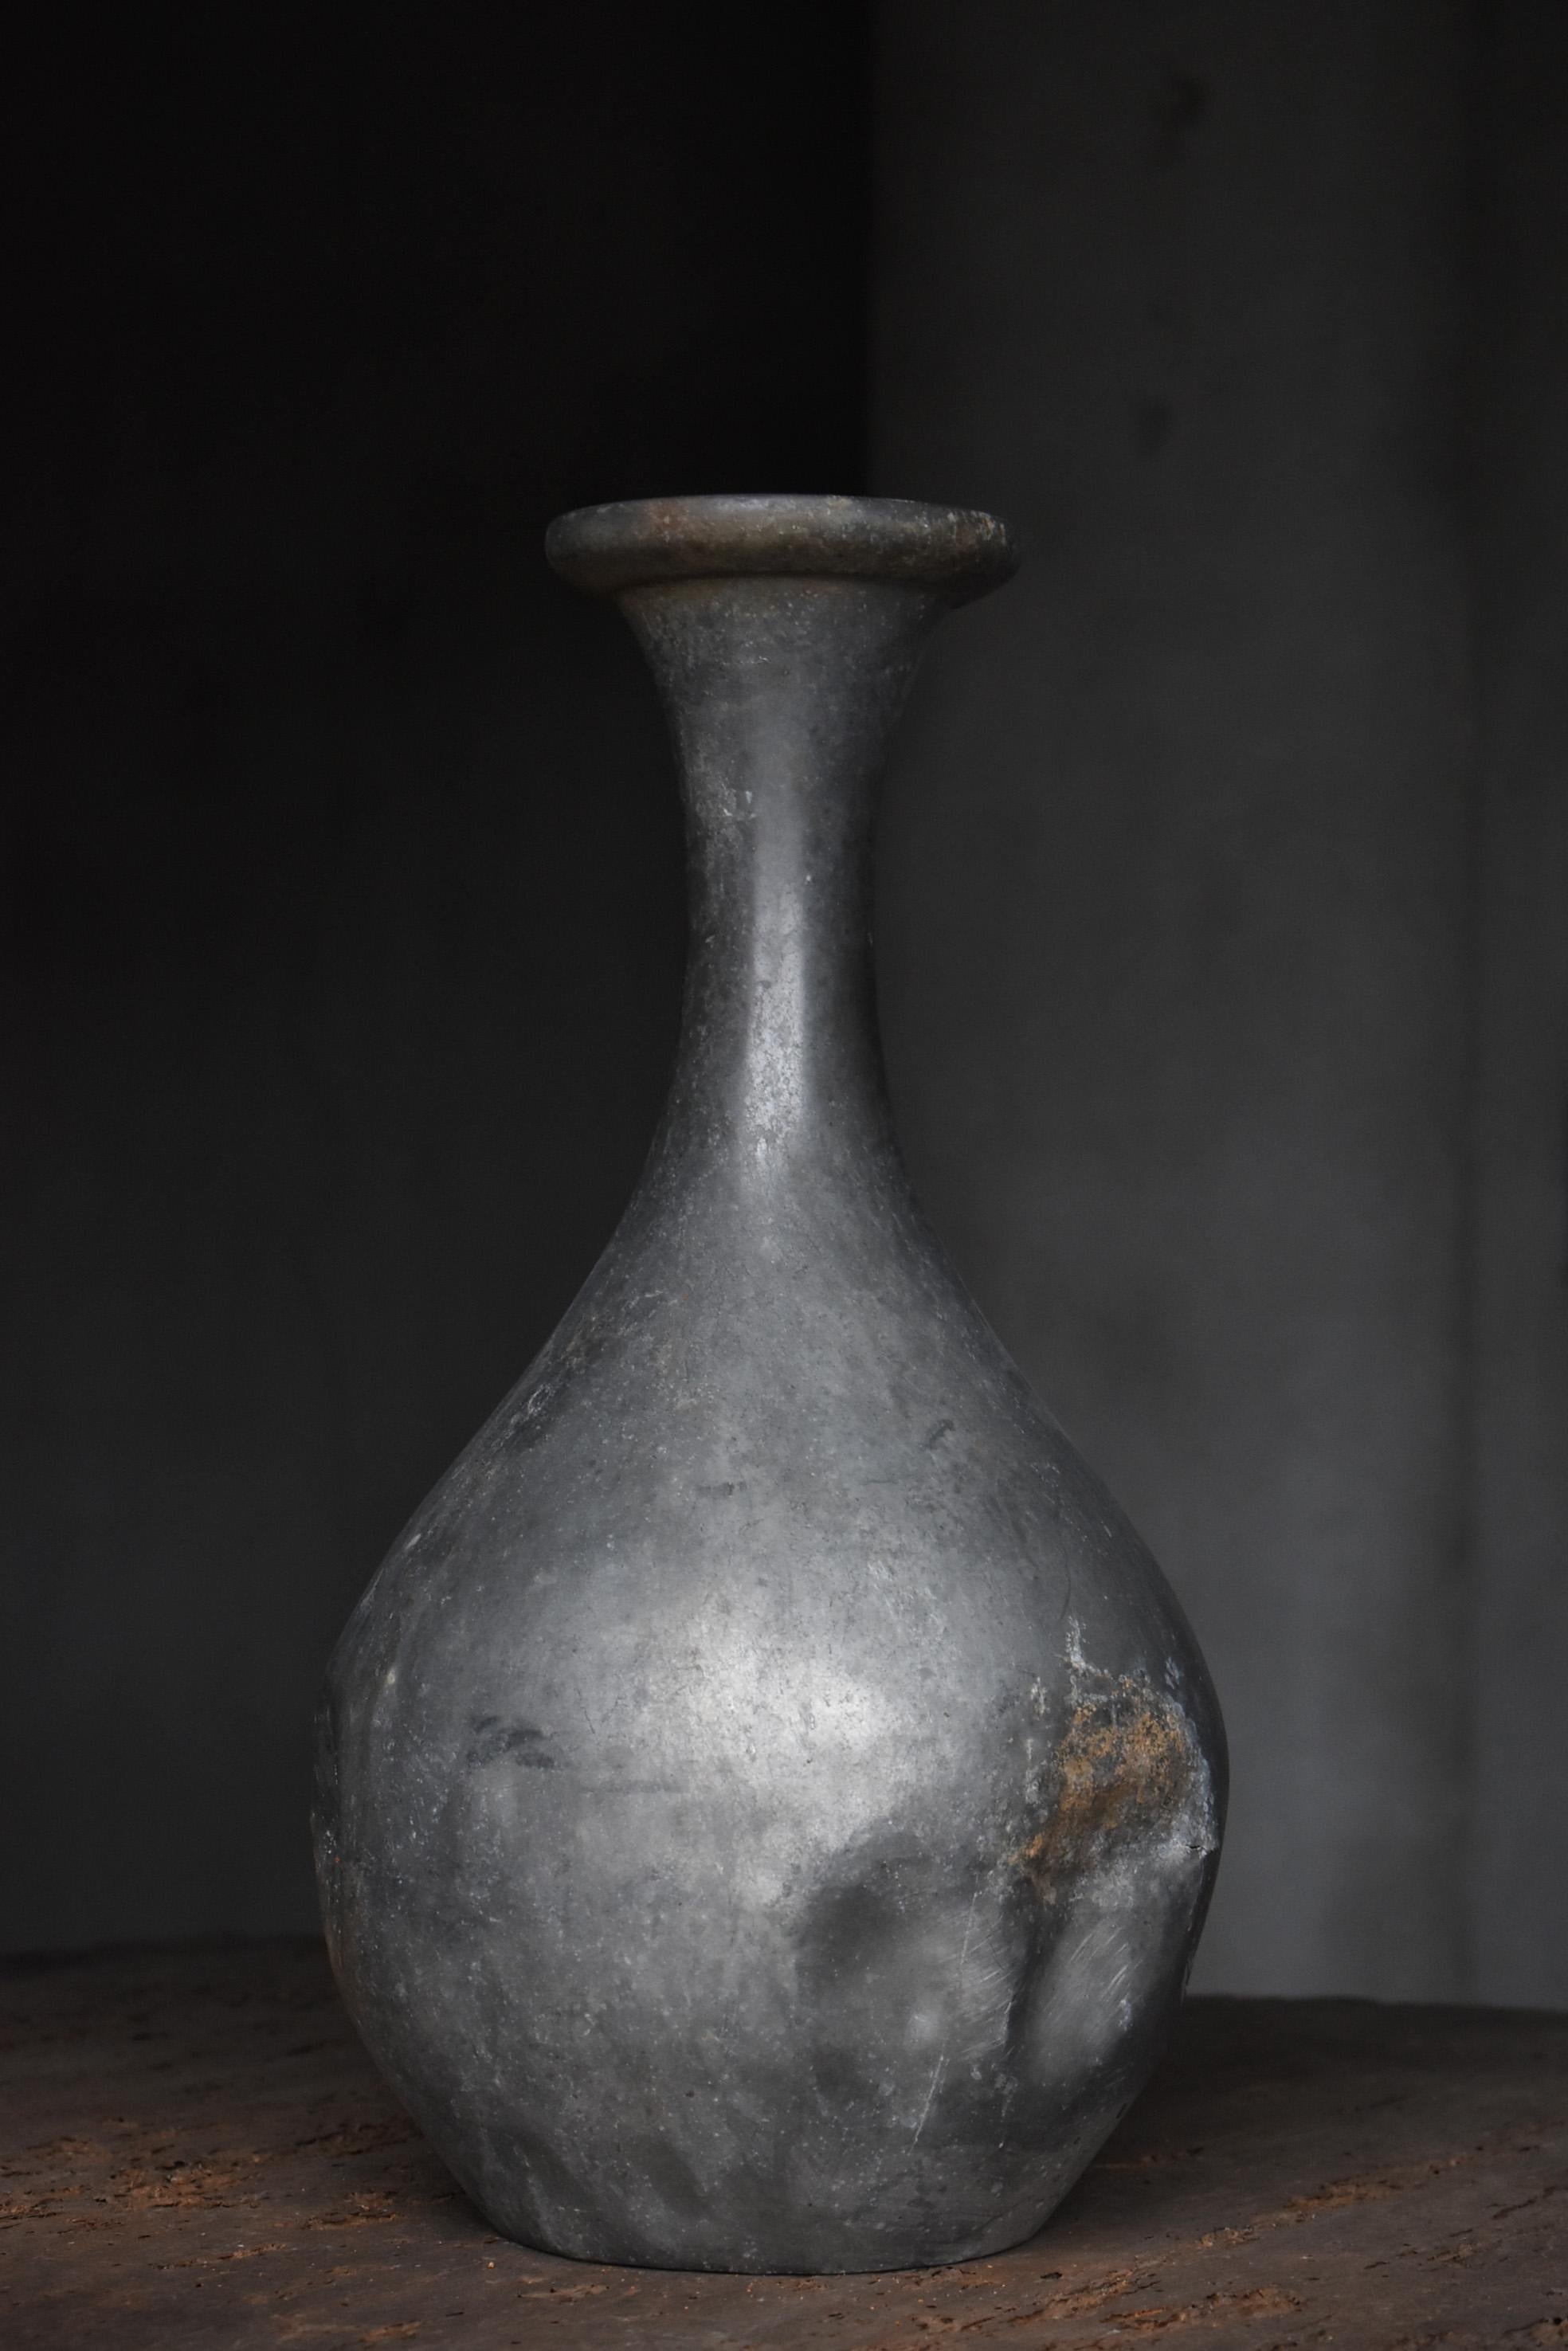 Edo Japanese antique Sake Bottle 1800s-1860s/Flower Vase Vessel Wabisabi art